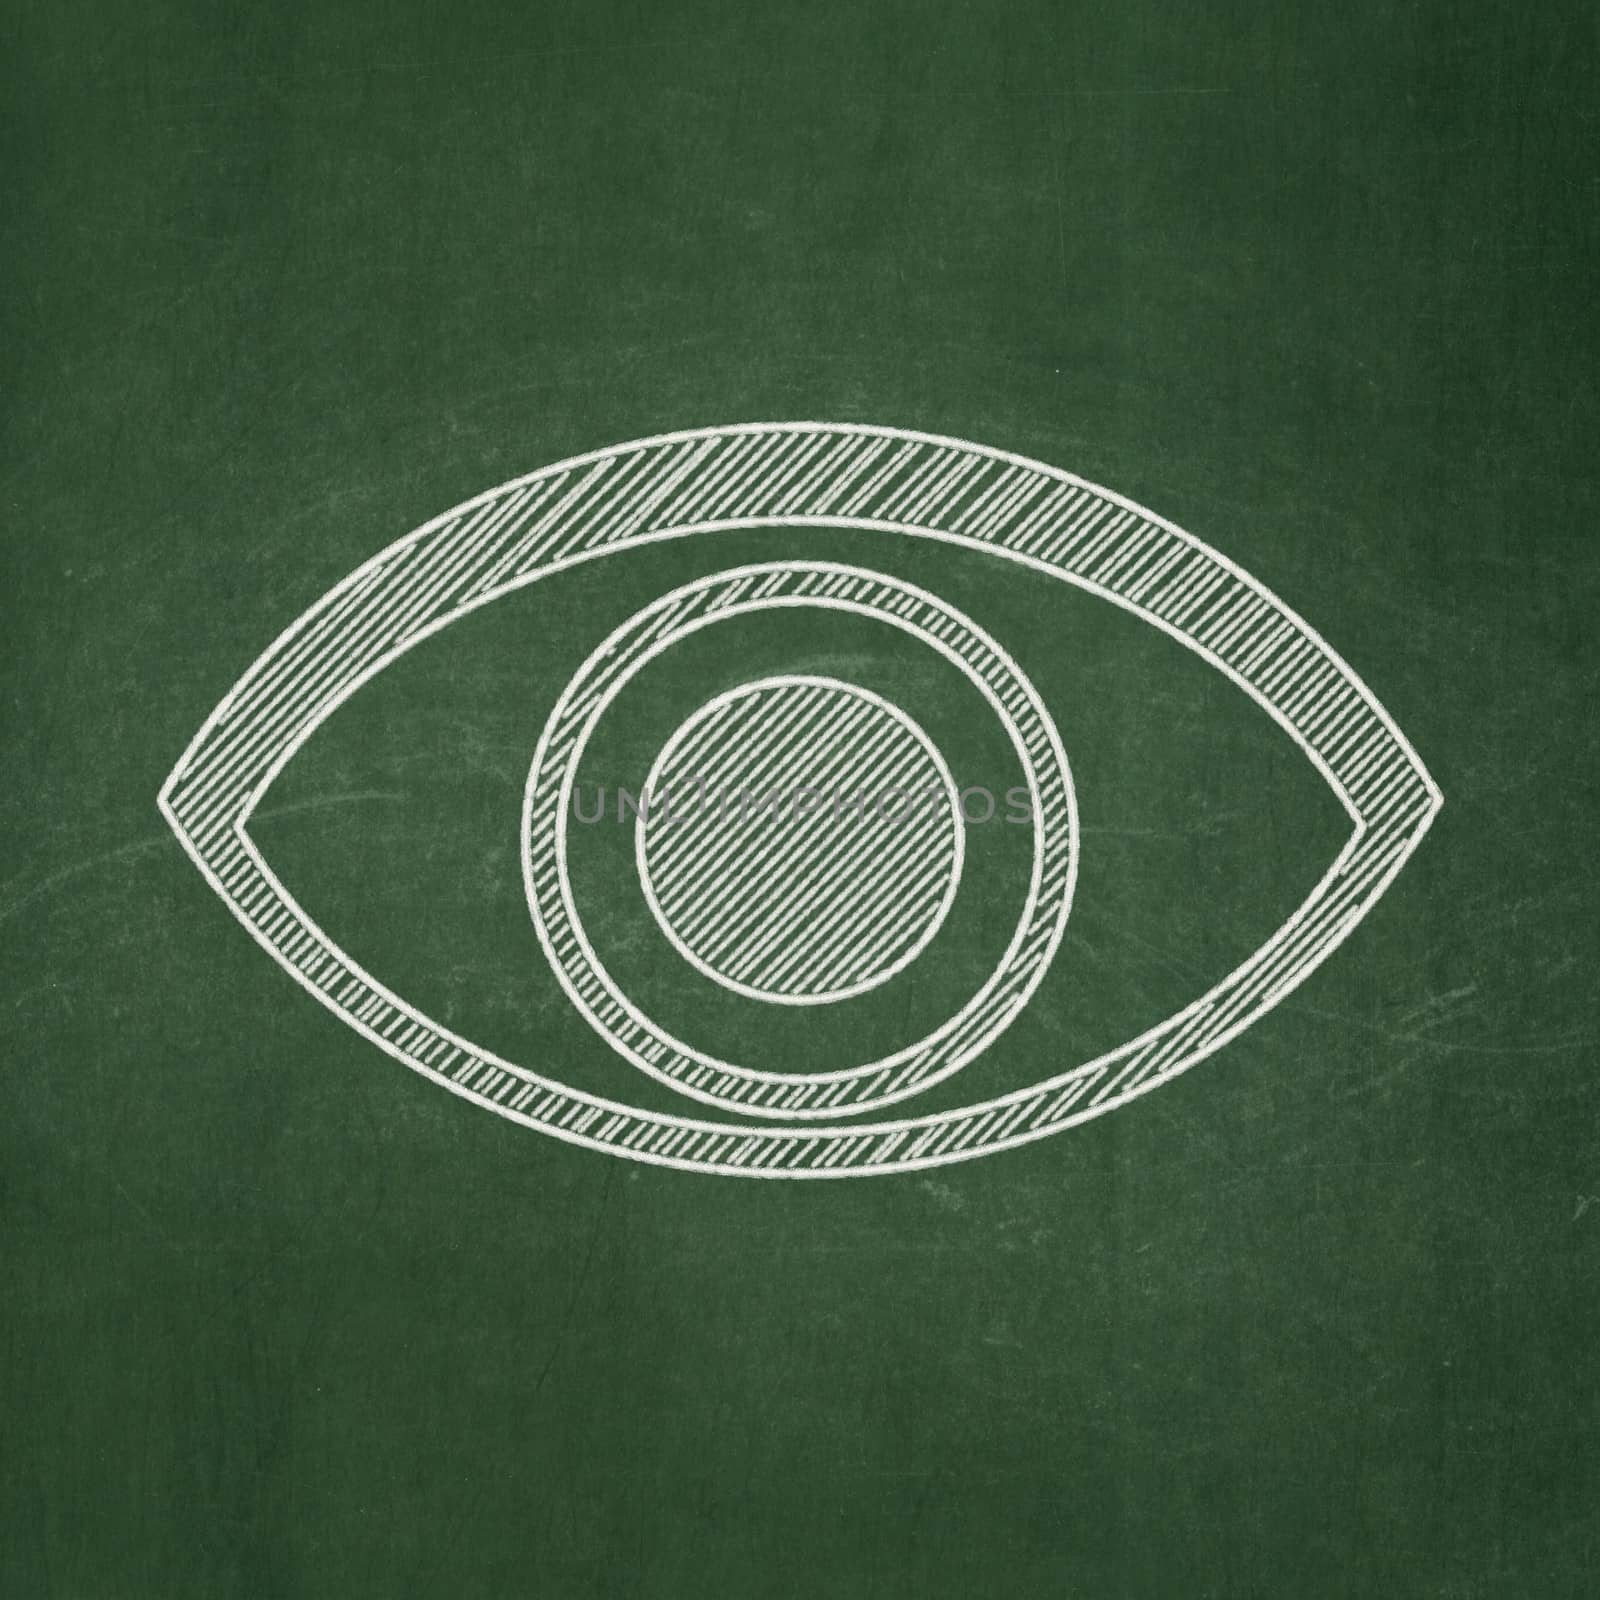 Privacy concept: Eye on chalkboard background by maxkabakov